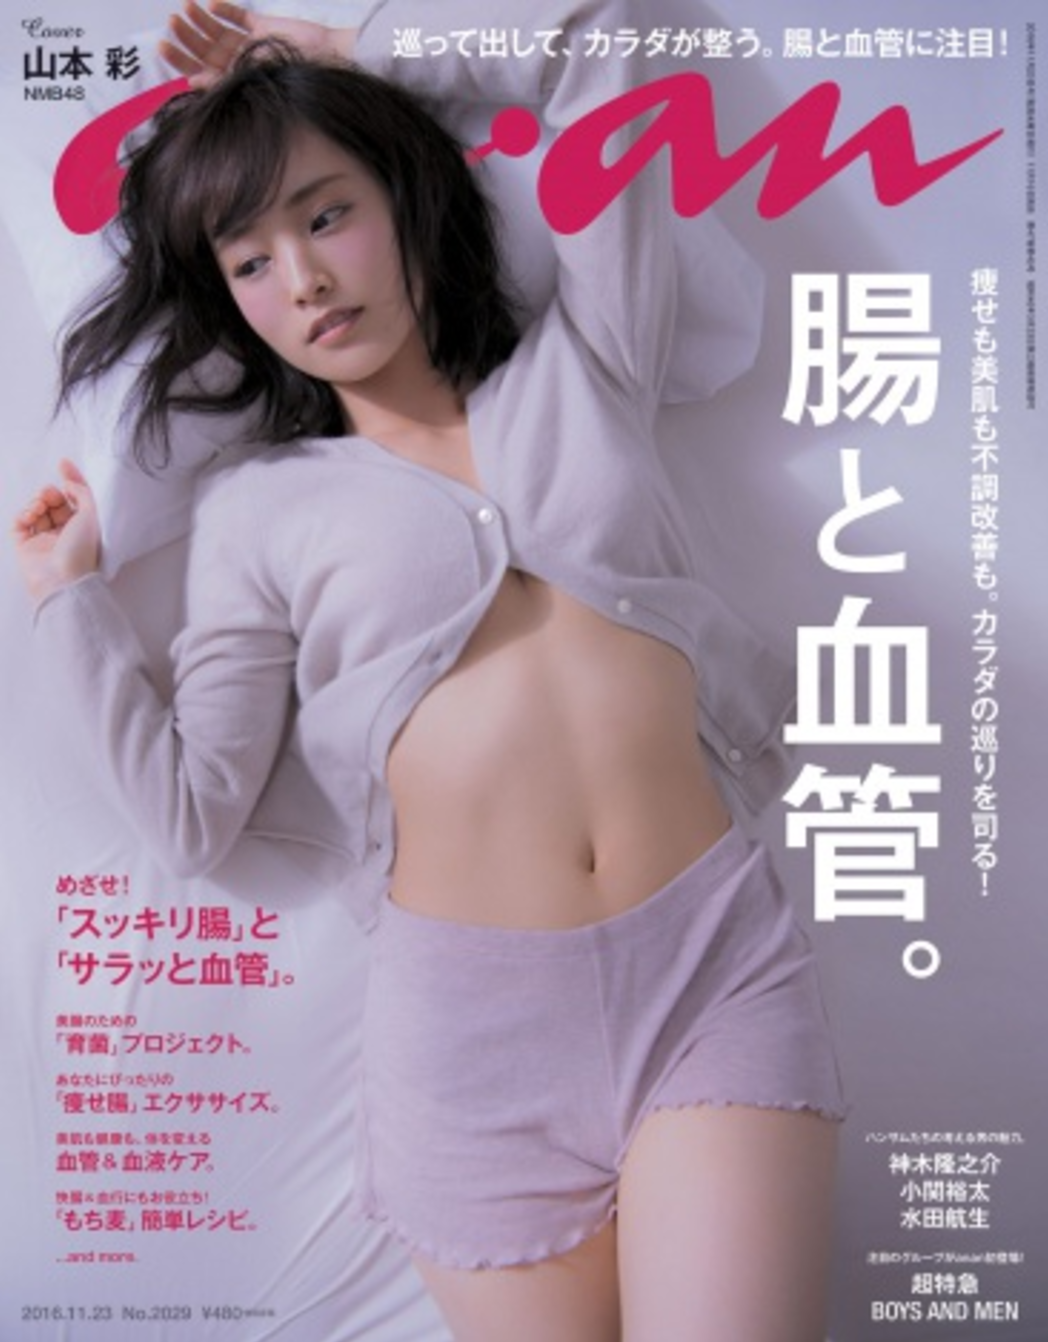 山本彩初登女性雜誌封面 露健康性感腹肌